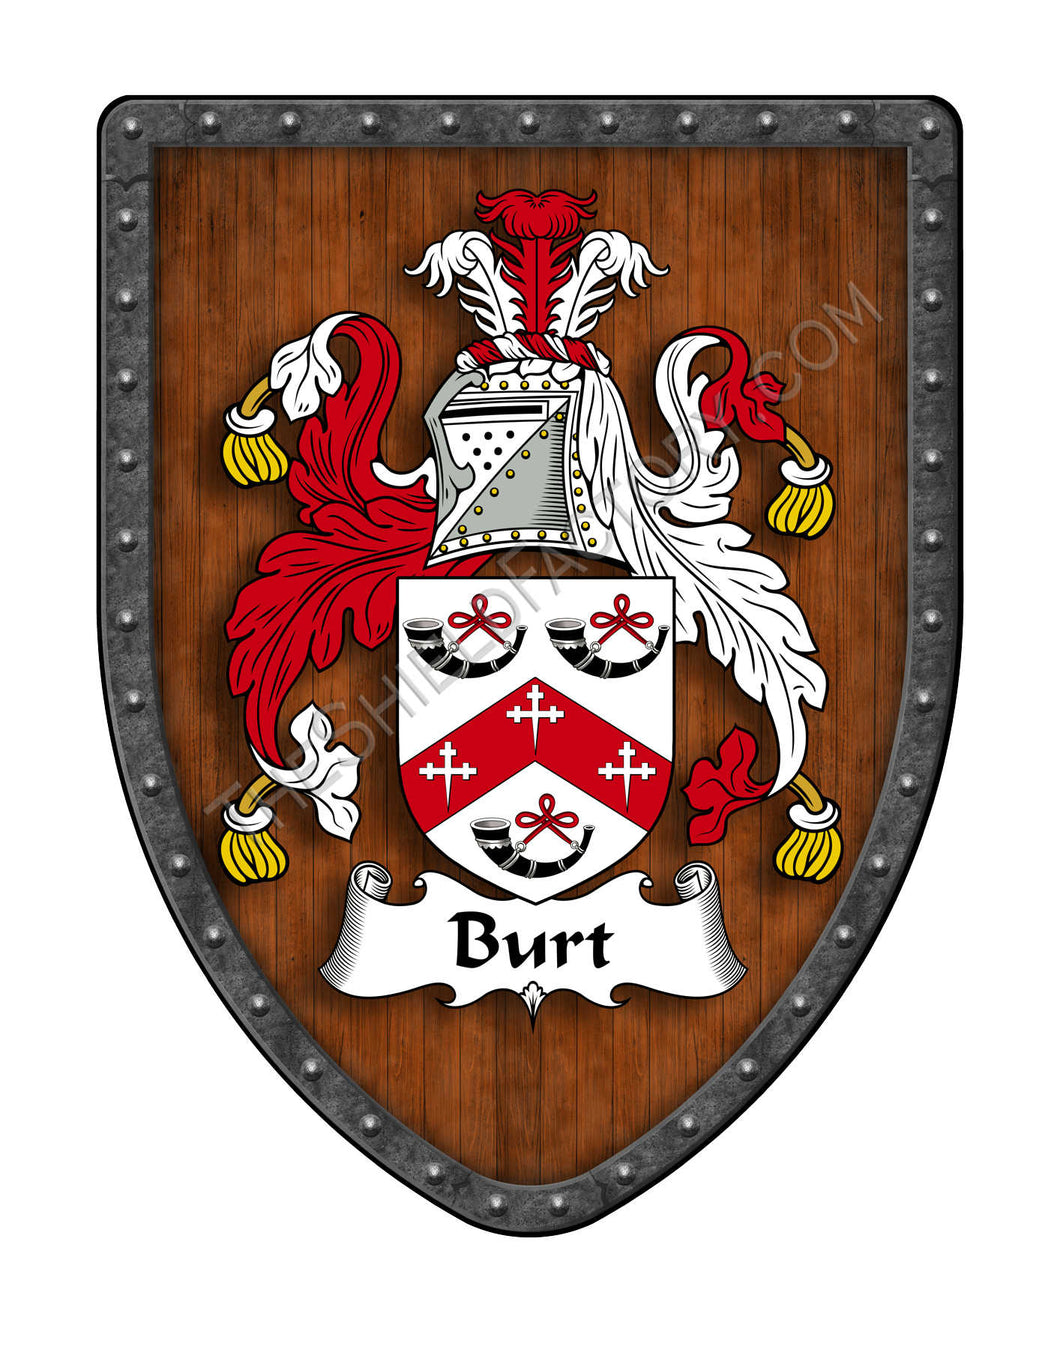 Burt Coat of Arms Family Crest